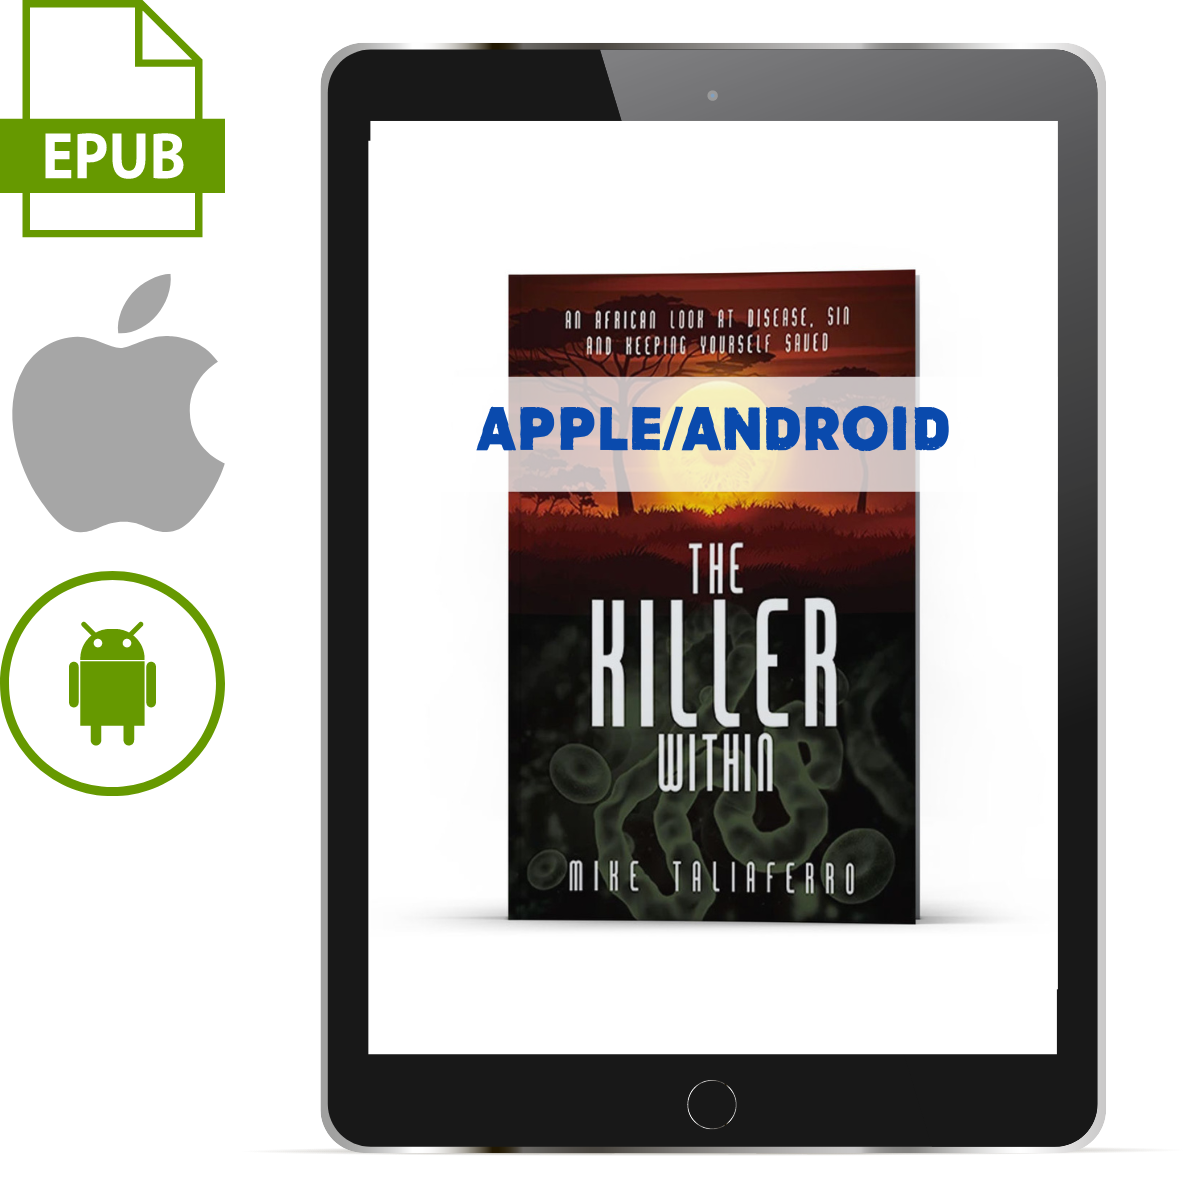 The Killer Within Apple/Android ePub - Illumination Publishers